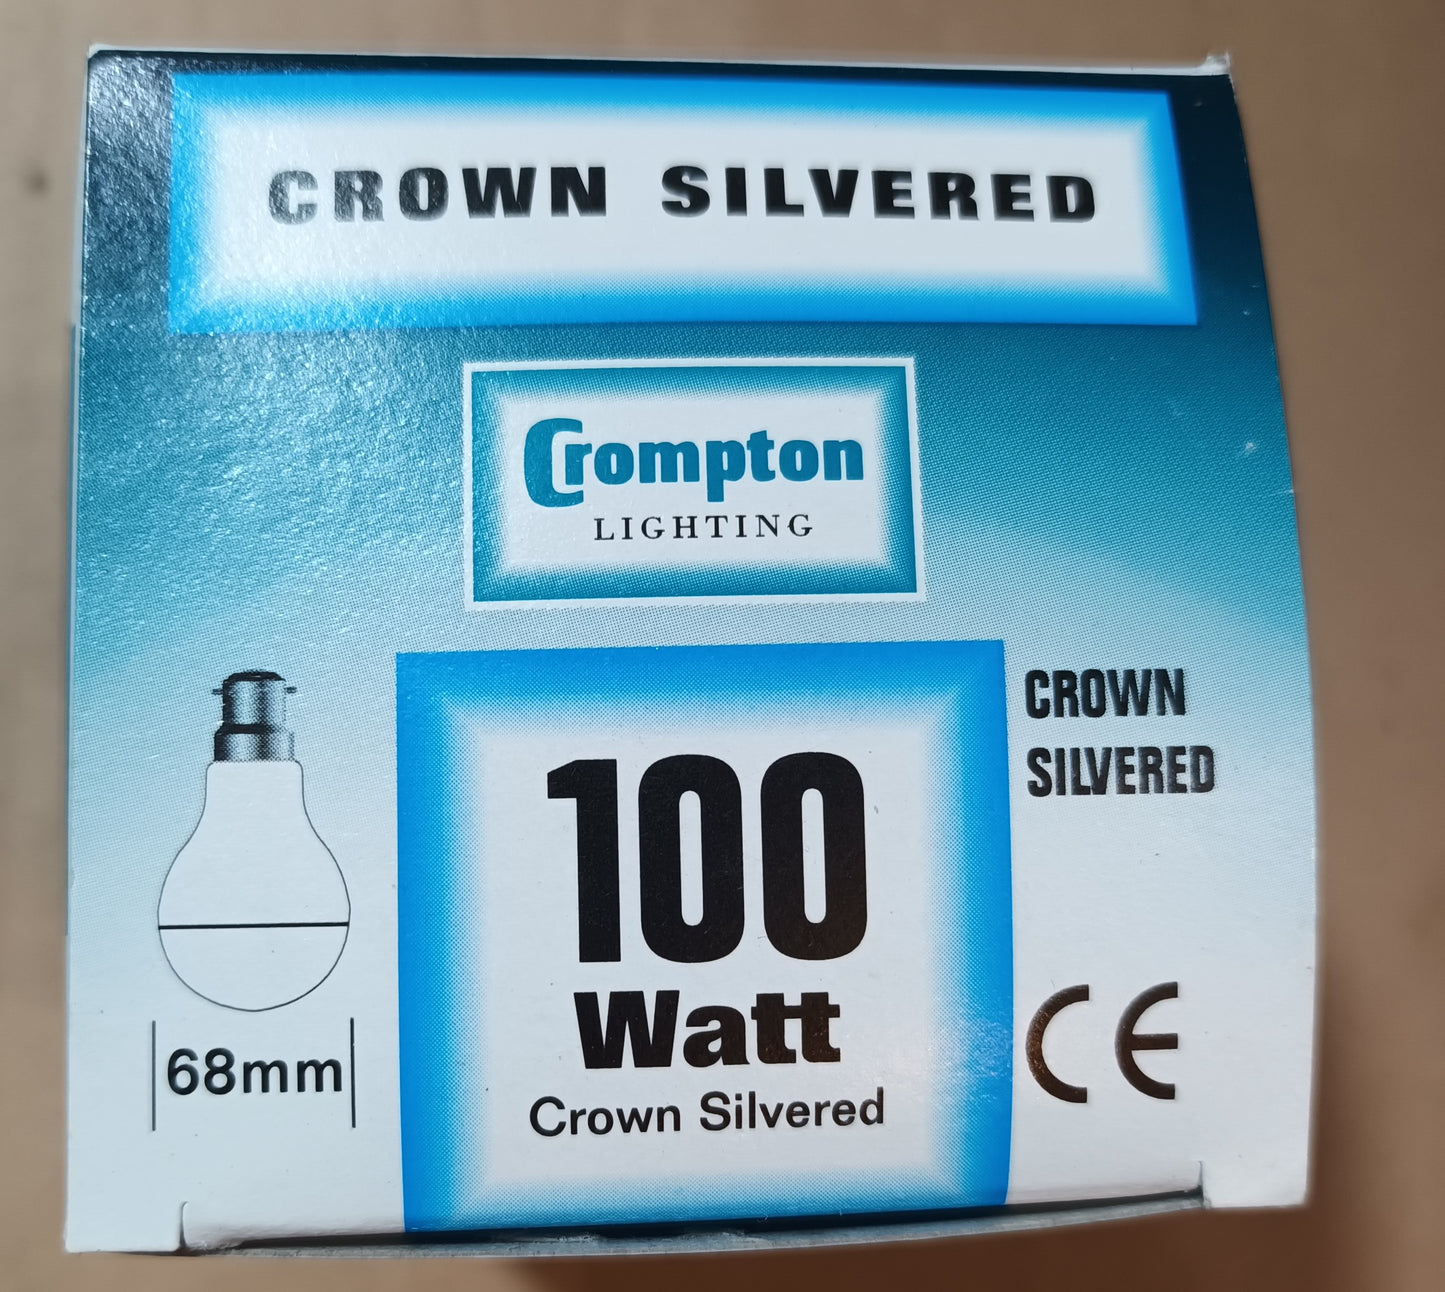 Crown Silver 100 watt BC / B22 By Crompton